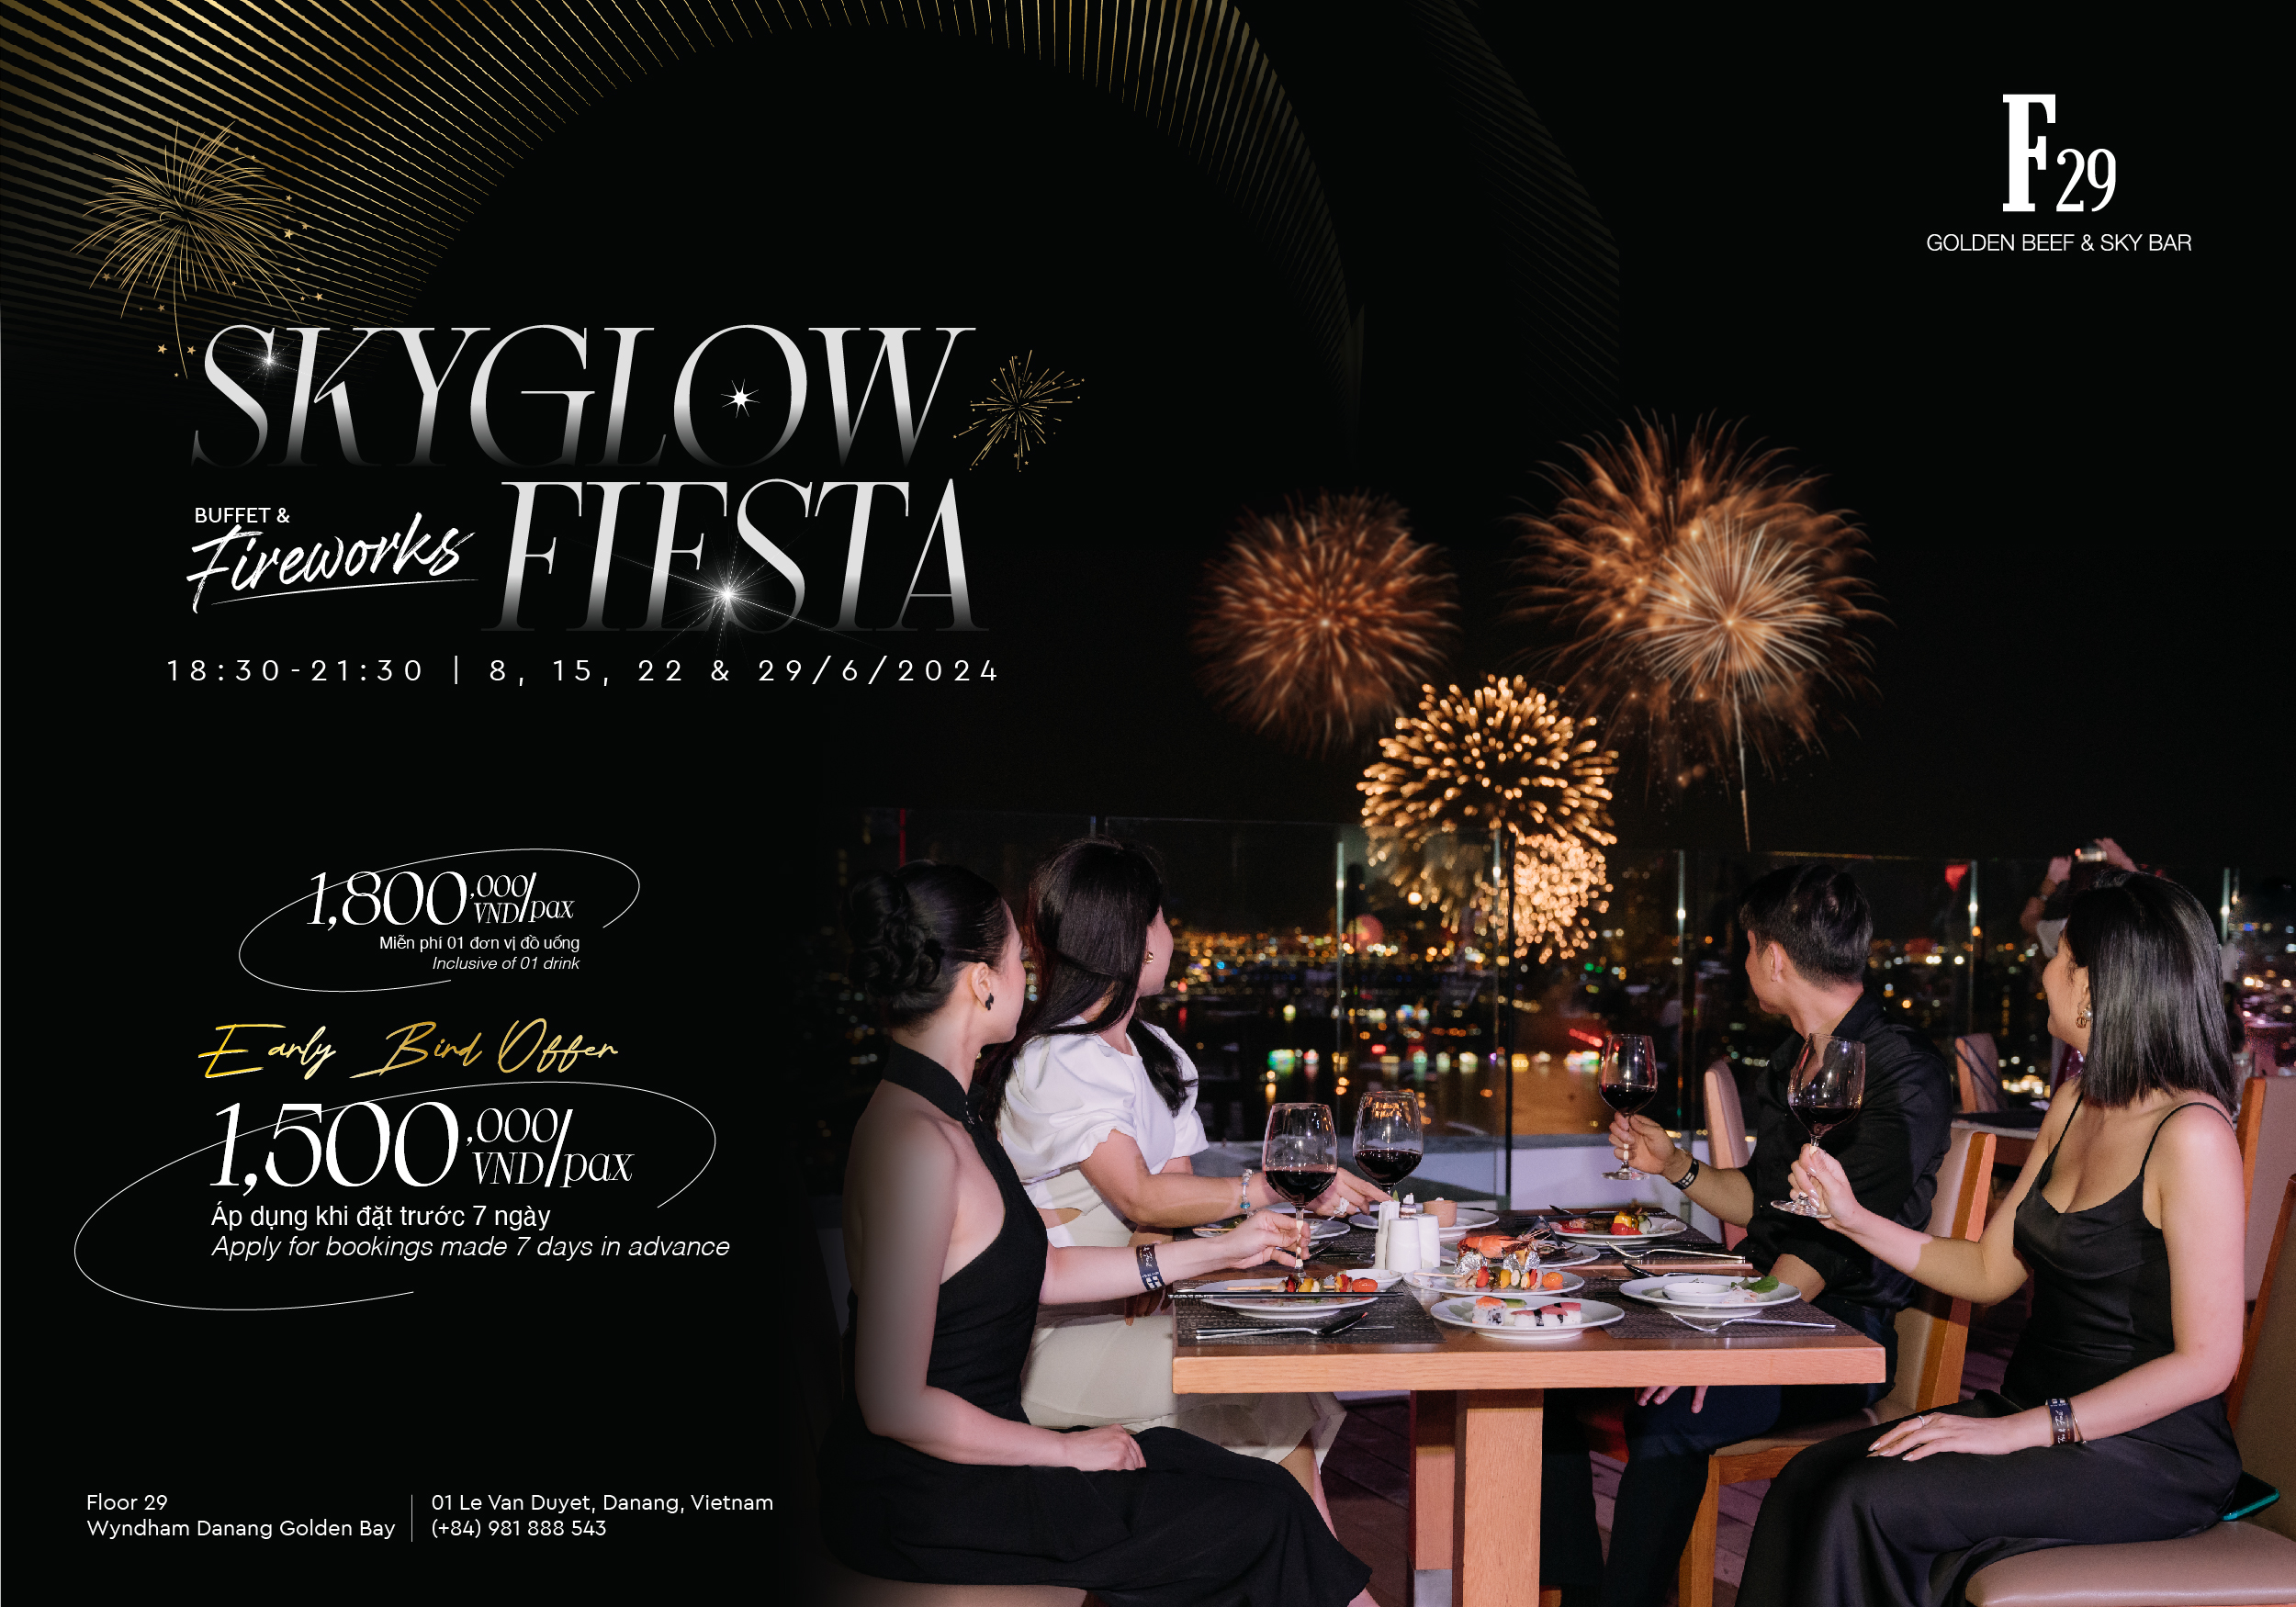 Skyglow Fiesta – The premium buffet to enjoy fireworks at F29 Golden Beef & Sky Bar